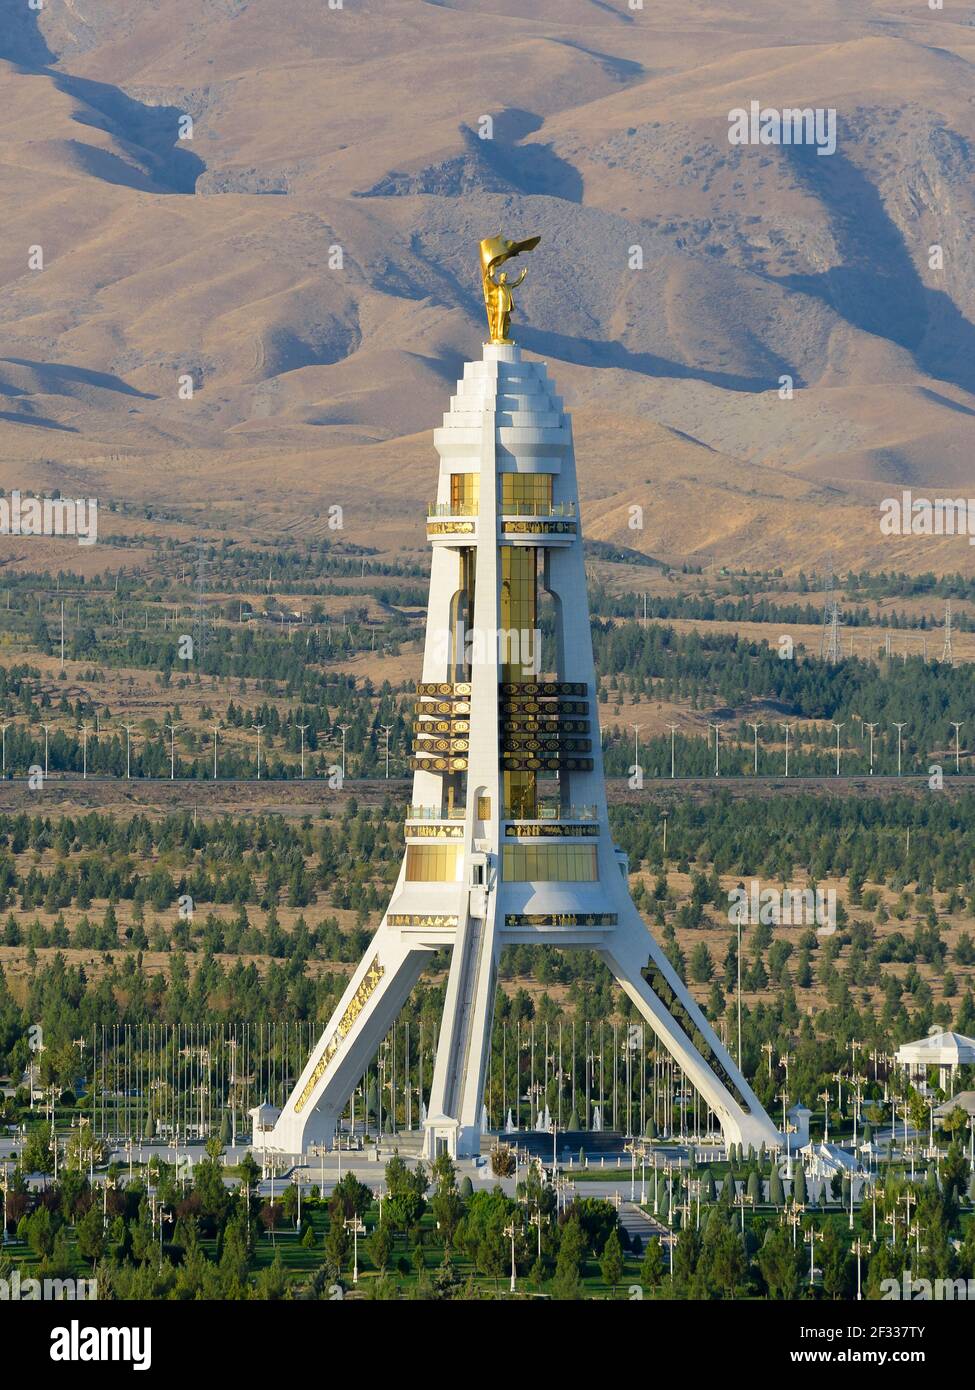 Neutrality Monument in Aschgabat, Turkmenistan erbaut mit weißem Marmor. Saparmurat Nijasov Goldstatue an der Spitze. Bogen der Neutralität. Stockfoto